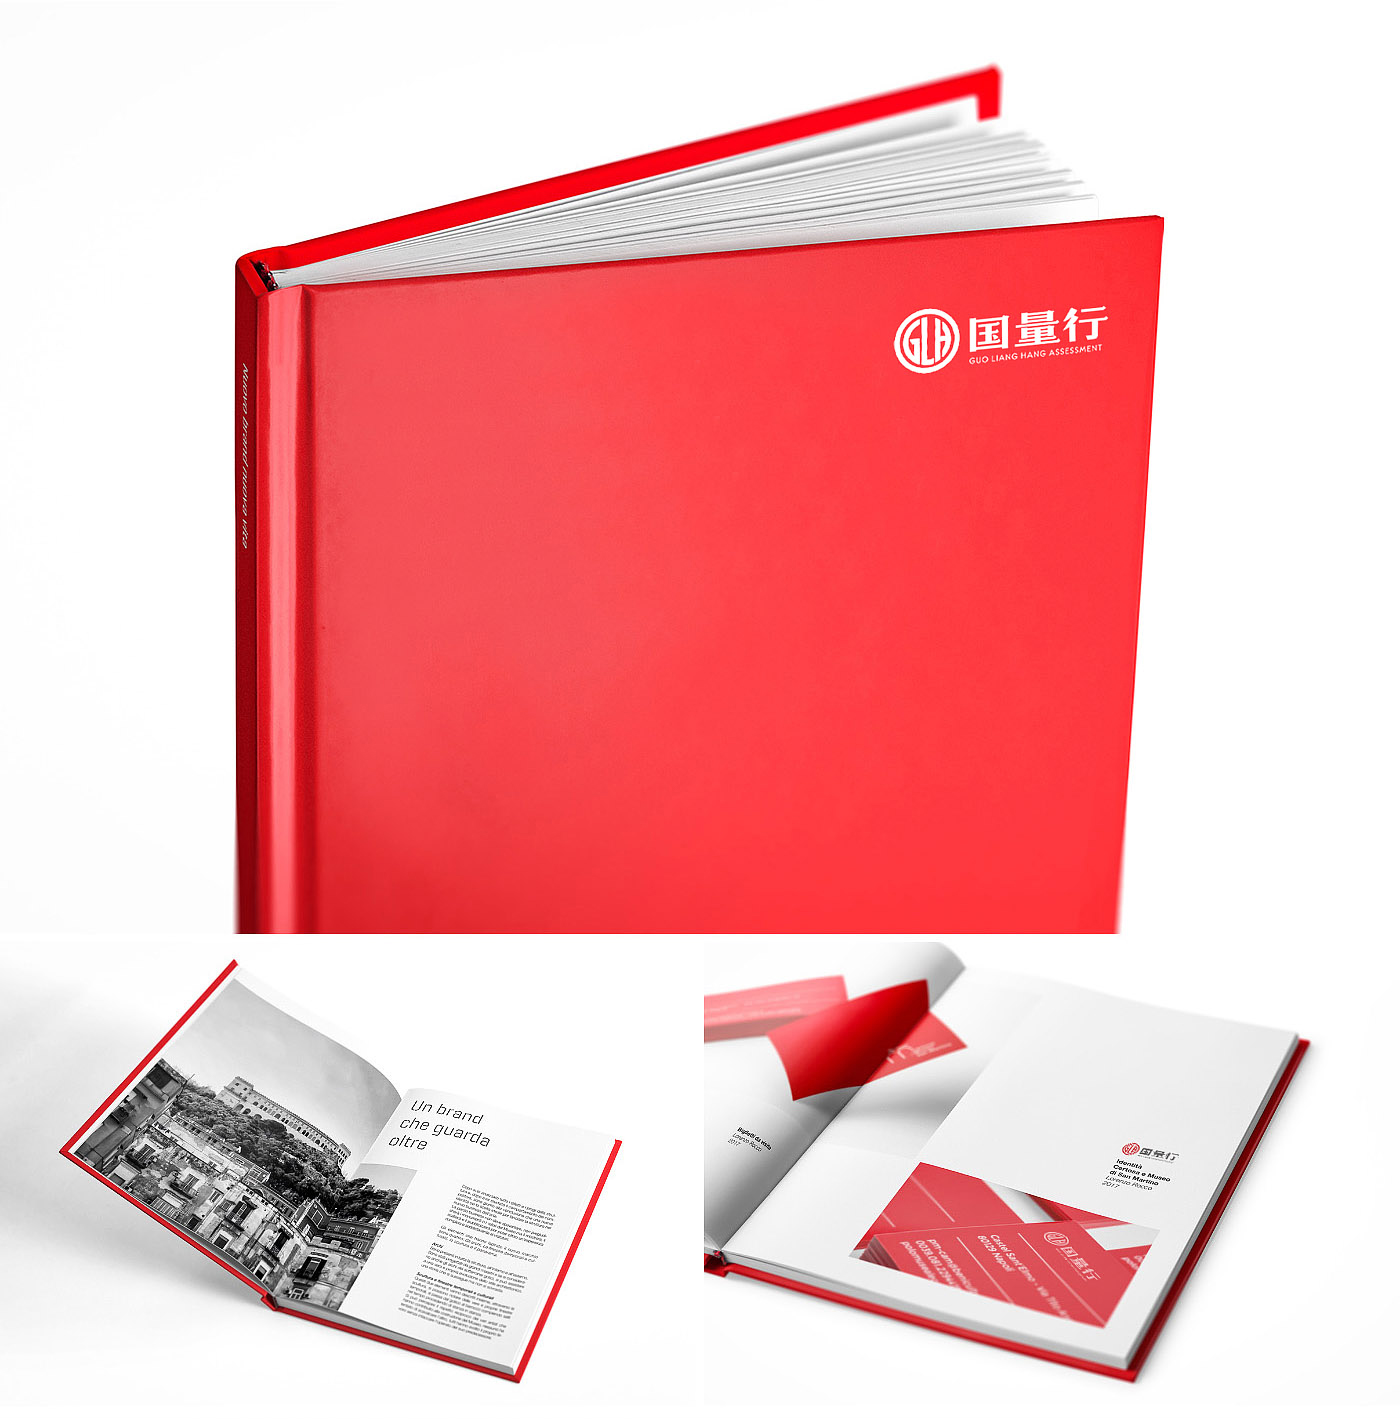 深圳**点设计公司分享画册设计介绍及画册设计案例